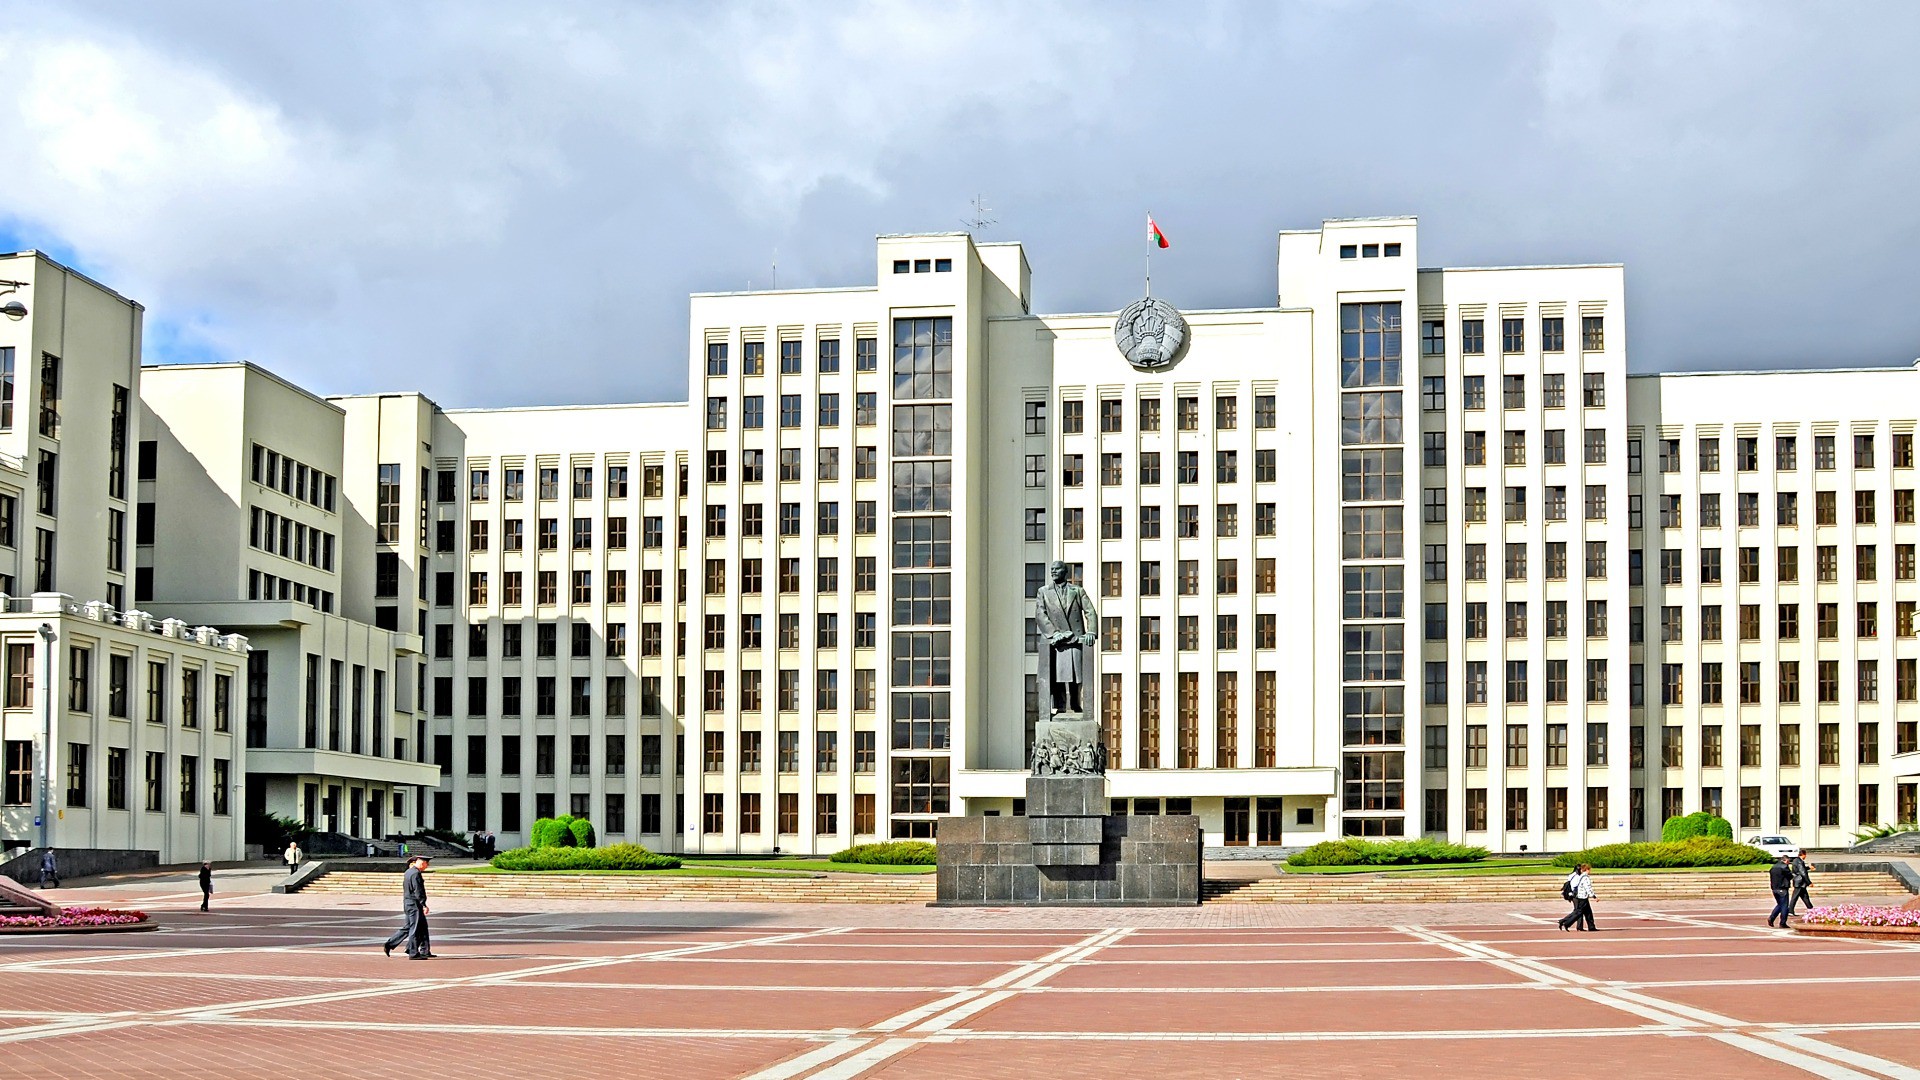 Le siège du gouvernement, à Minsk, capitale de la Biélorussie (Photo:Dennis Jarvis/Flickr/CC BY-SA 2.0)